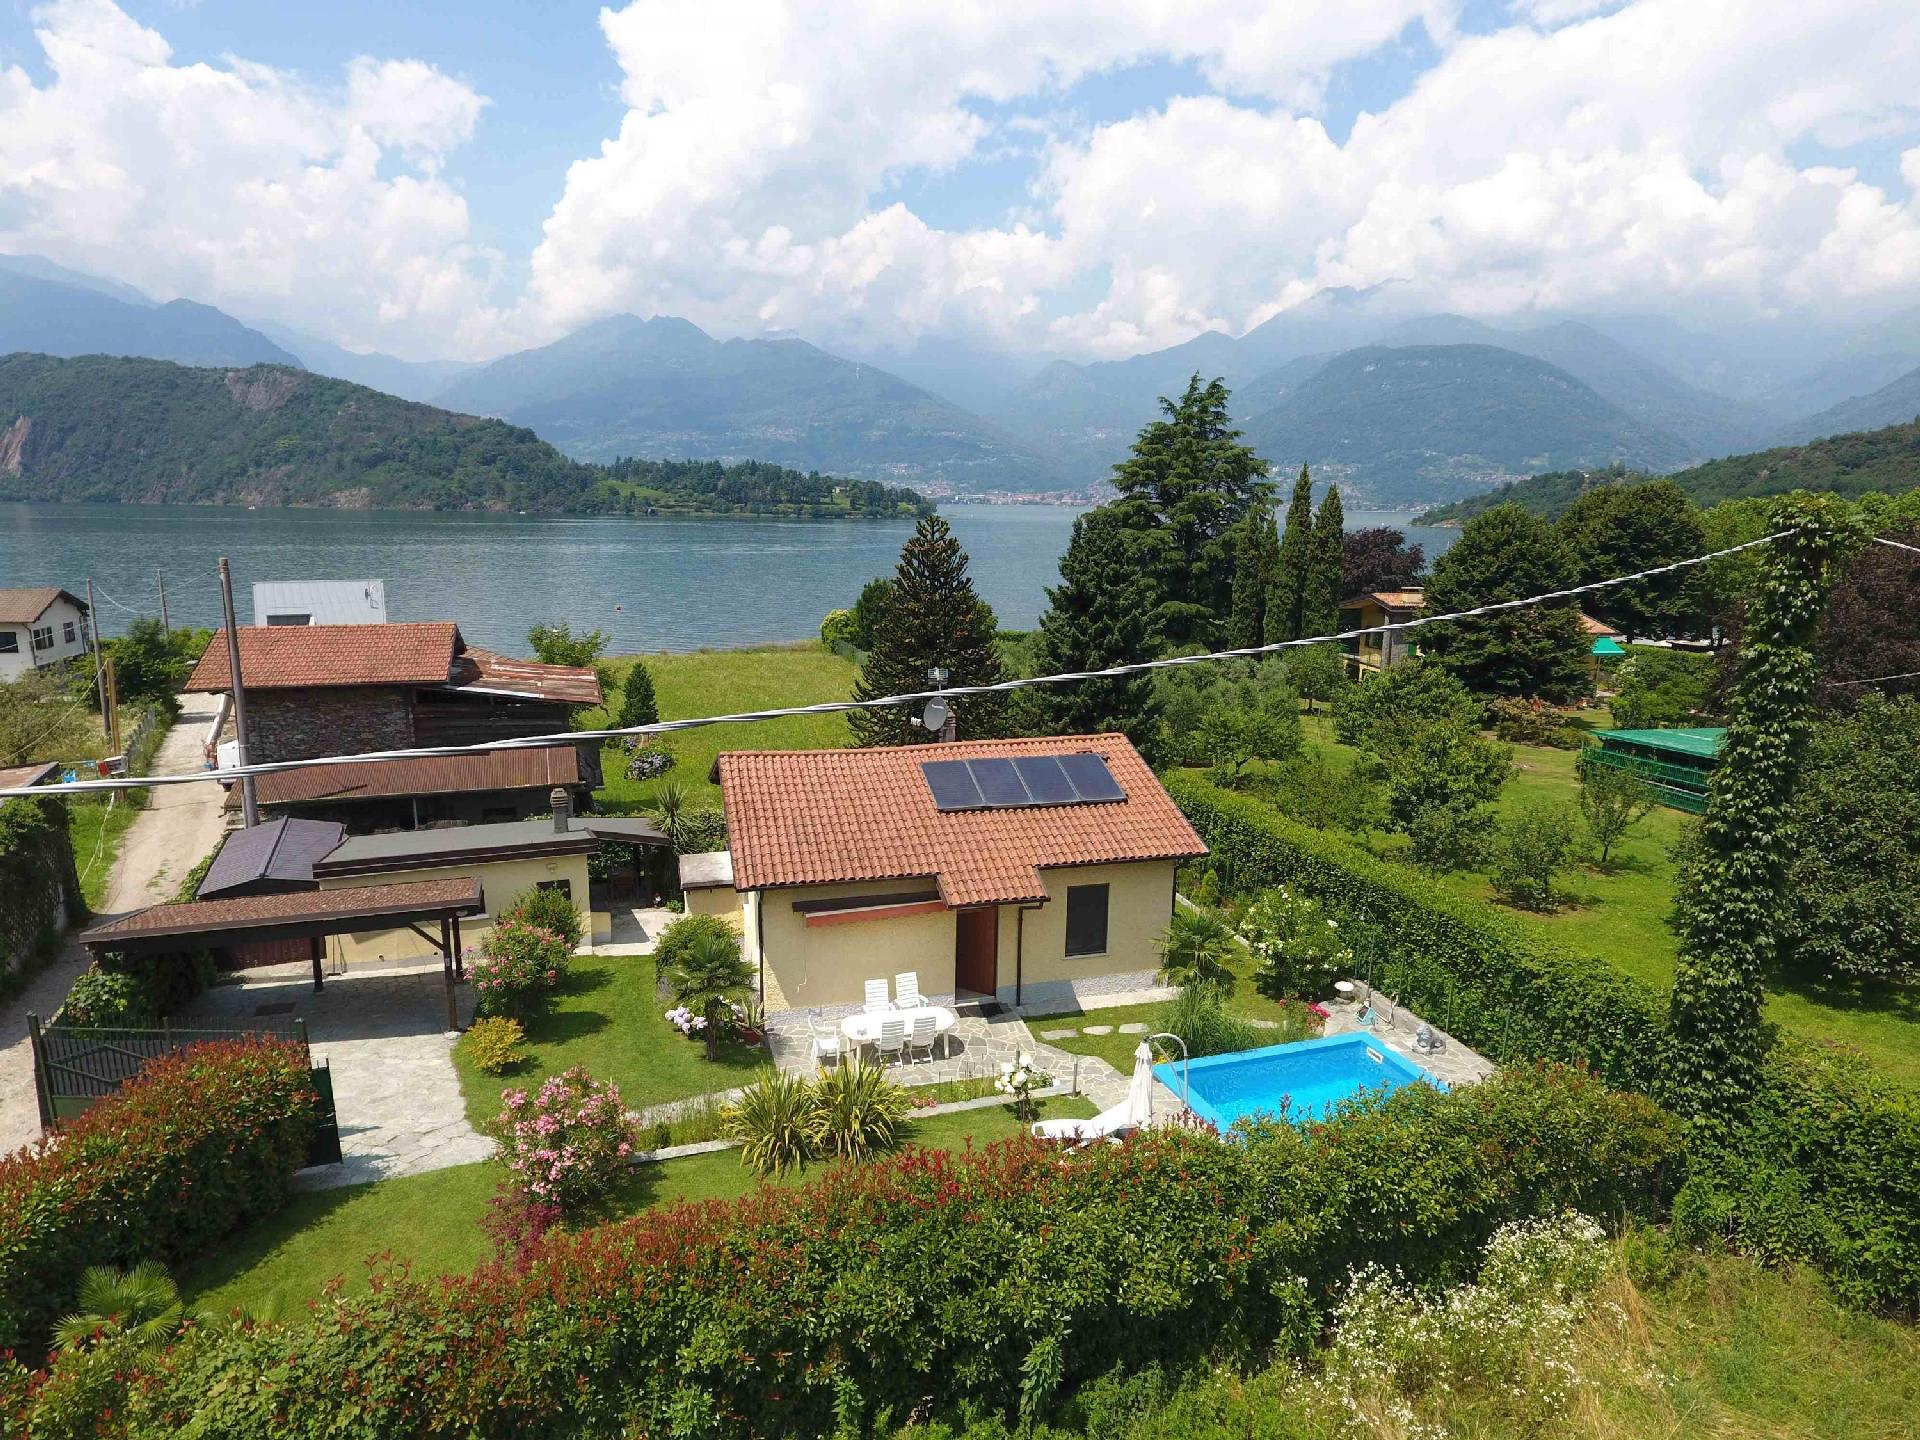 Ferienvilla am See mit Pool Ferienhaus  Comer See - Lago di Como